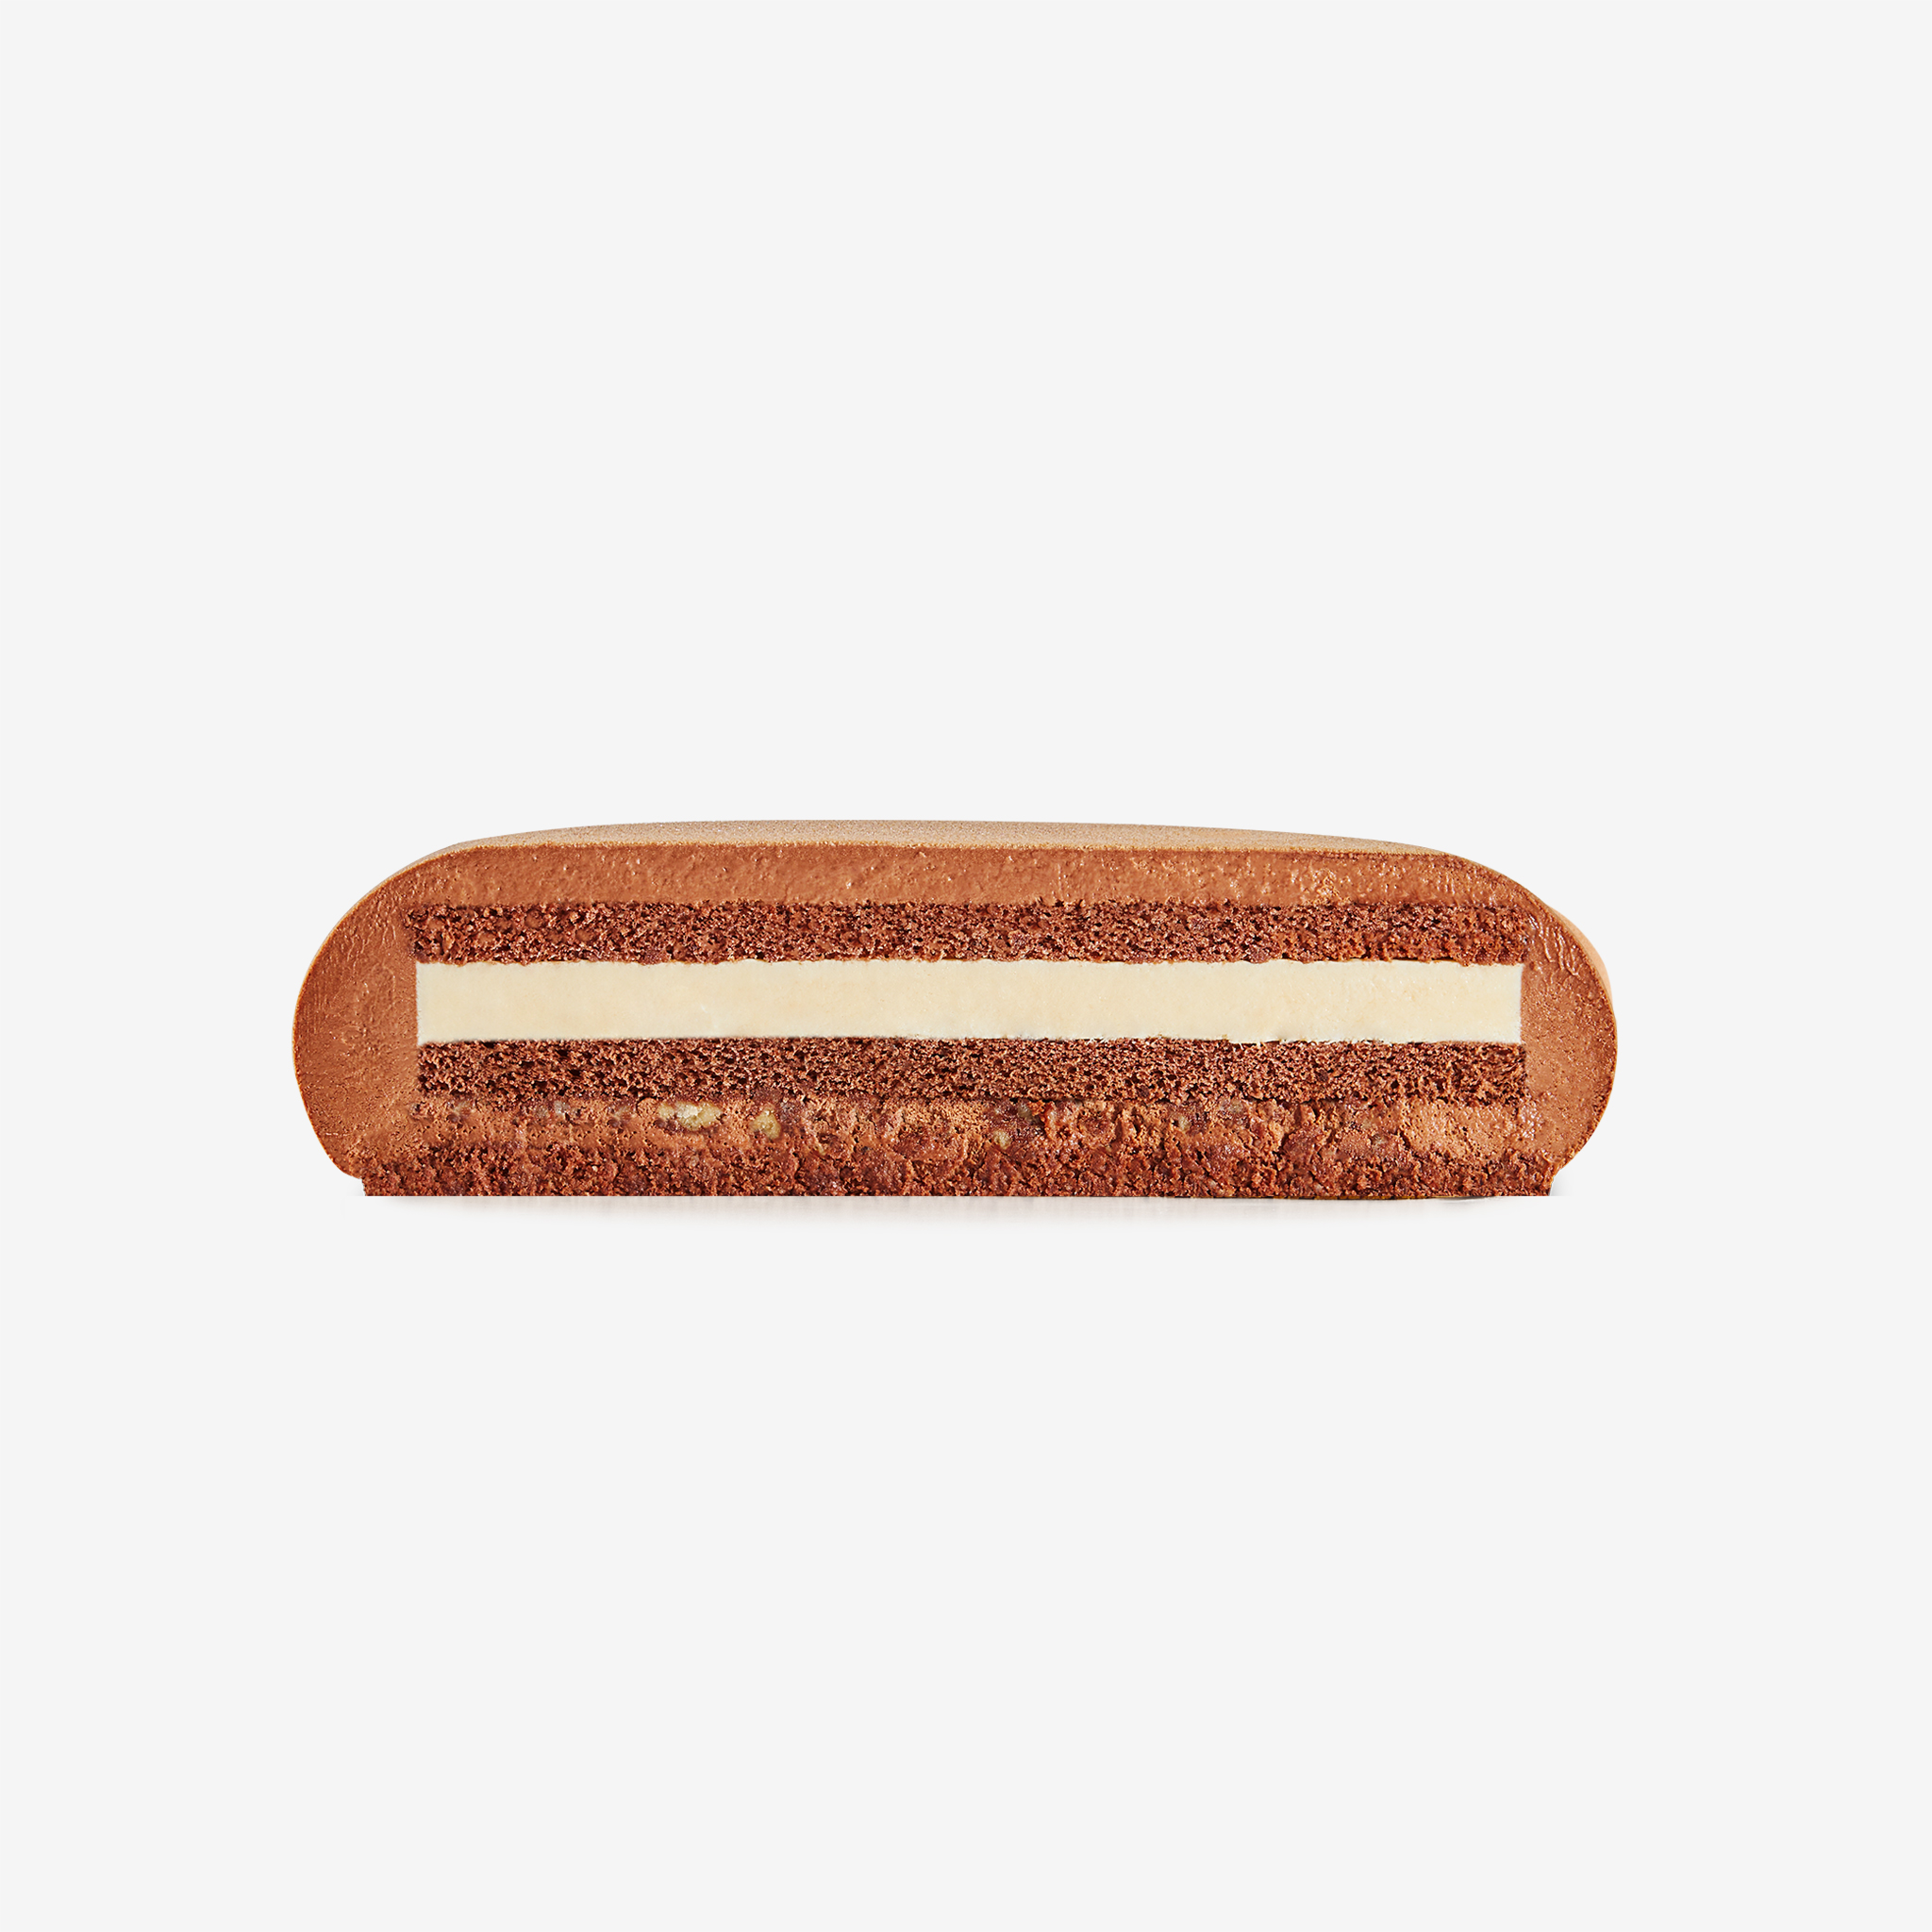 LaFuong Pastry – Ivory Noir – Sô-cô-la & Vani. Trở về với những hương vị quen thuộc nhất, “với phiên bản nâng cấp” là chủ đề mà LaFuong muốn gửi tới các bạn qua chiếc bánh này – Ivory Noir. Chiếc bánh có vị Sô-cô-la & Vani, một sự kết hợp hương vị đầy cổ điển, vừa độc đáo lại vừa phổ biến trong ẩm thực.. Bắt đầu với lớp mousse được làm từ sô-cô-la nguyên chất, đi kèm lớp bạt sô-cô-la đen bông mềm, kết hợp lớp kem ngậy làm từ quả vani Madagascar cao cấp, thêm chút giòn giòn của bánh quy hạnh nhân bọc sô-cô-la. Khi kết hợp cùng nhau, tất cả tạo nên một sự cân bằng hoàn hảo, một hương vị đậm đà, phức tạp và hấp dẫn.